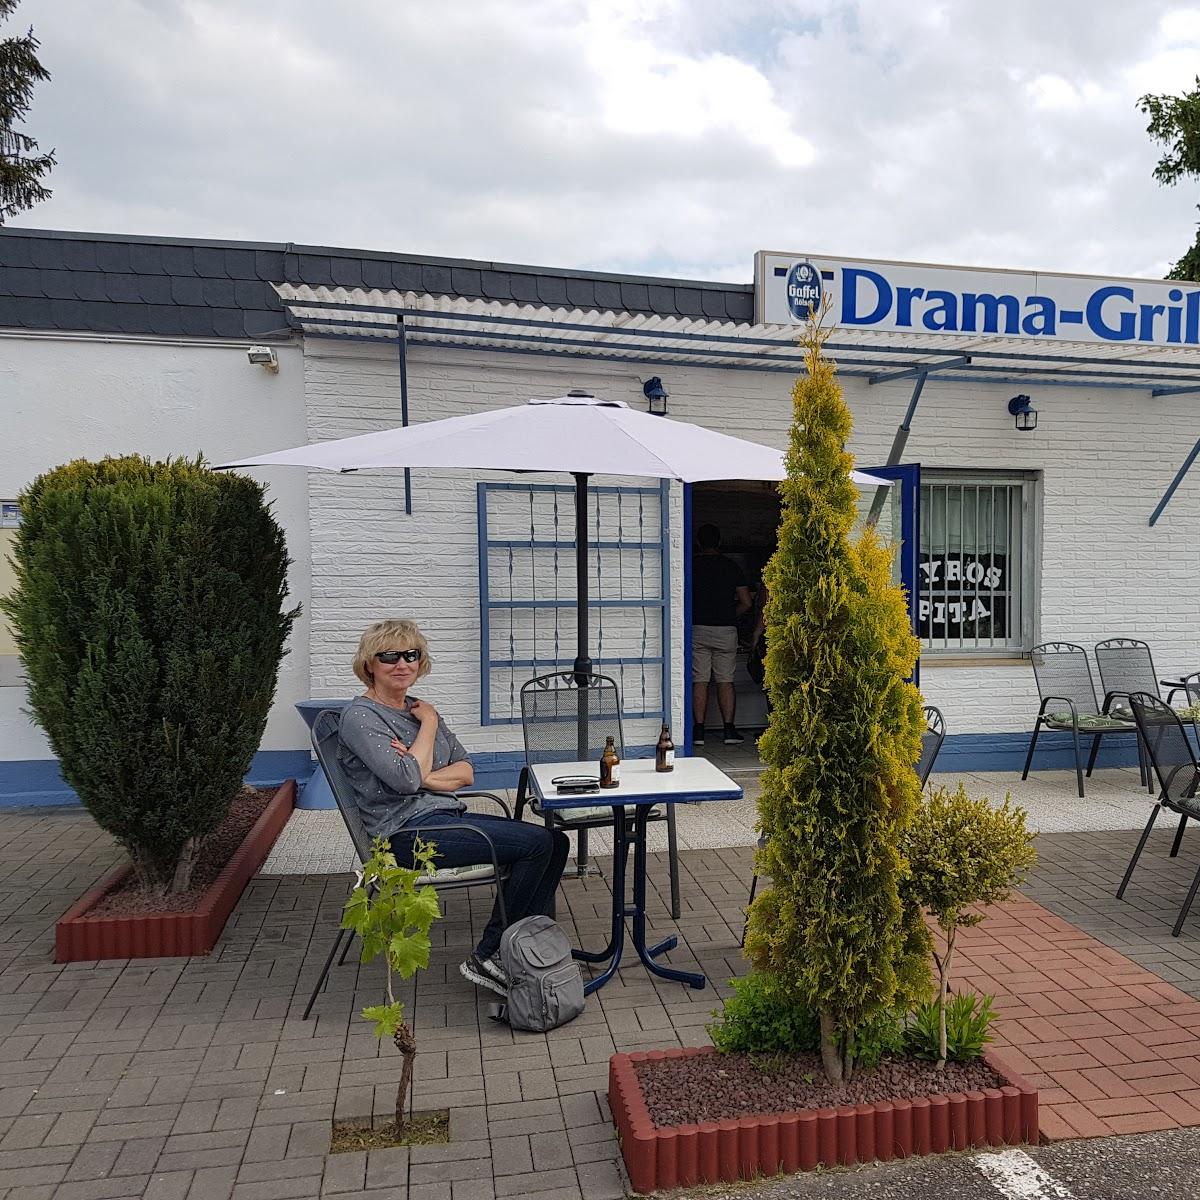 Restaurant "Drama Grill" in  Euskirchen